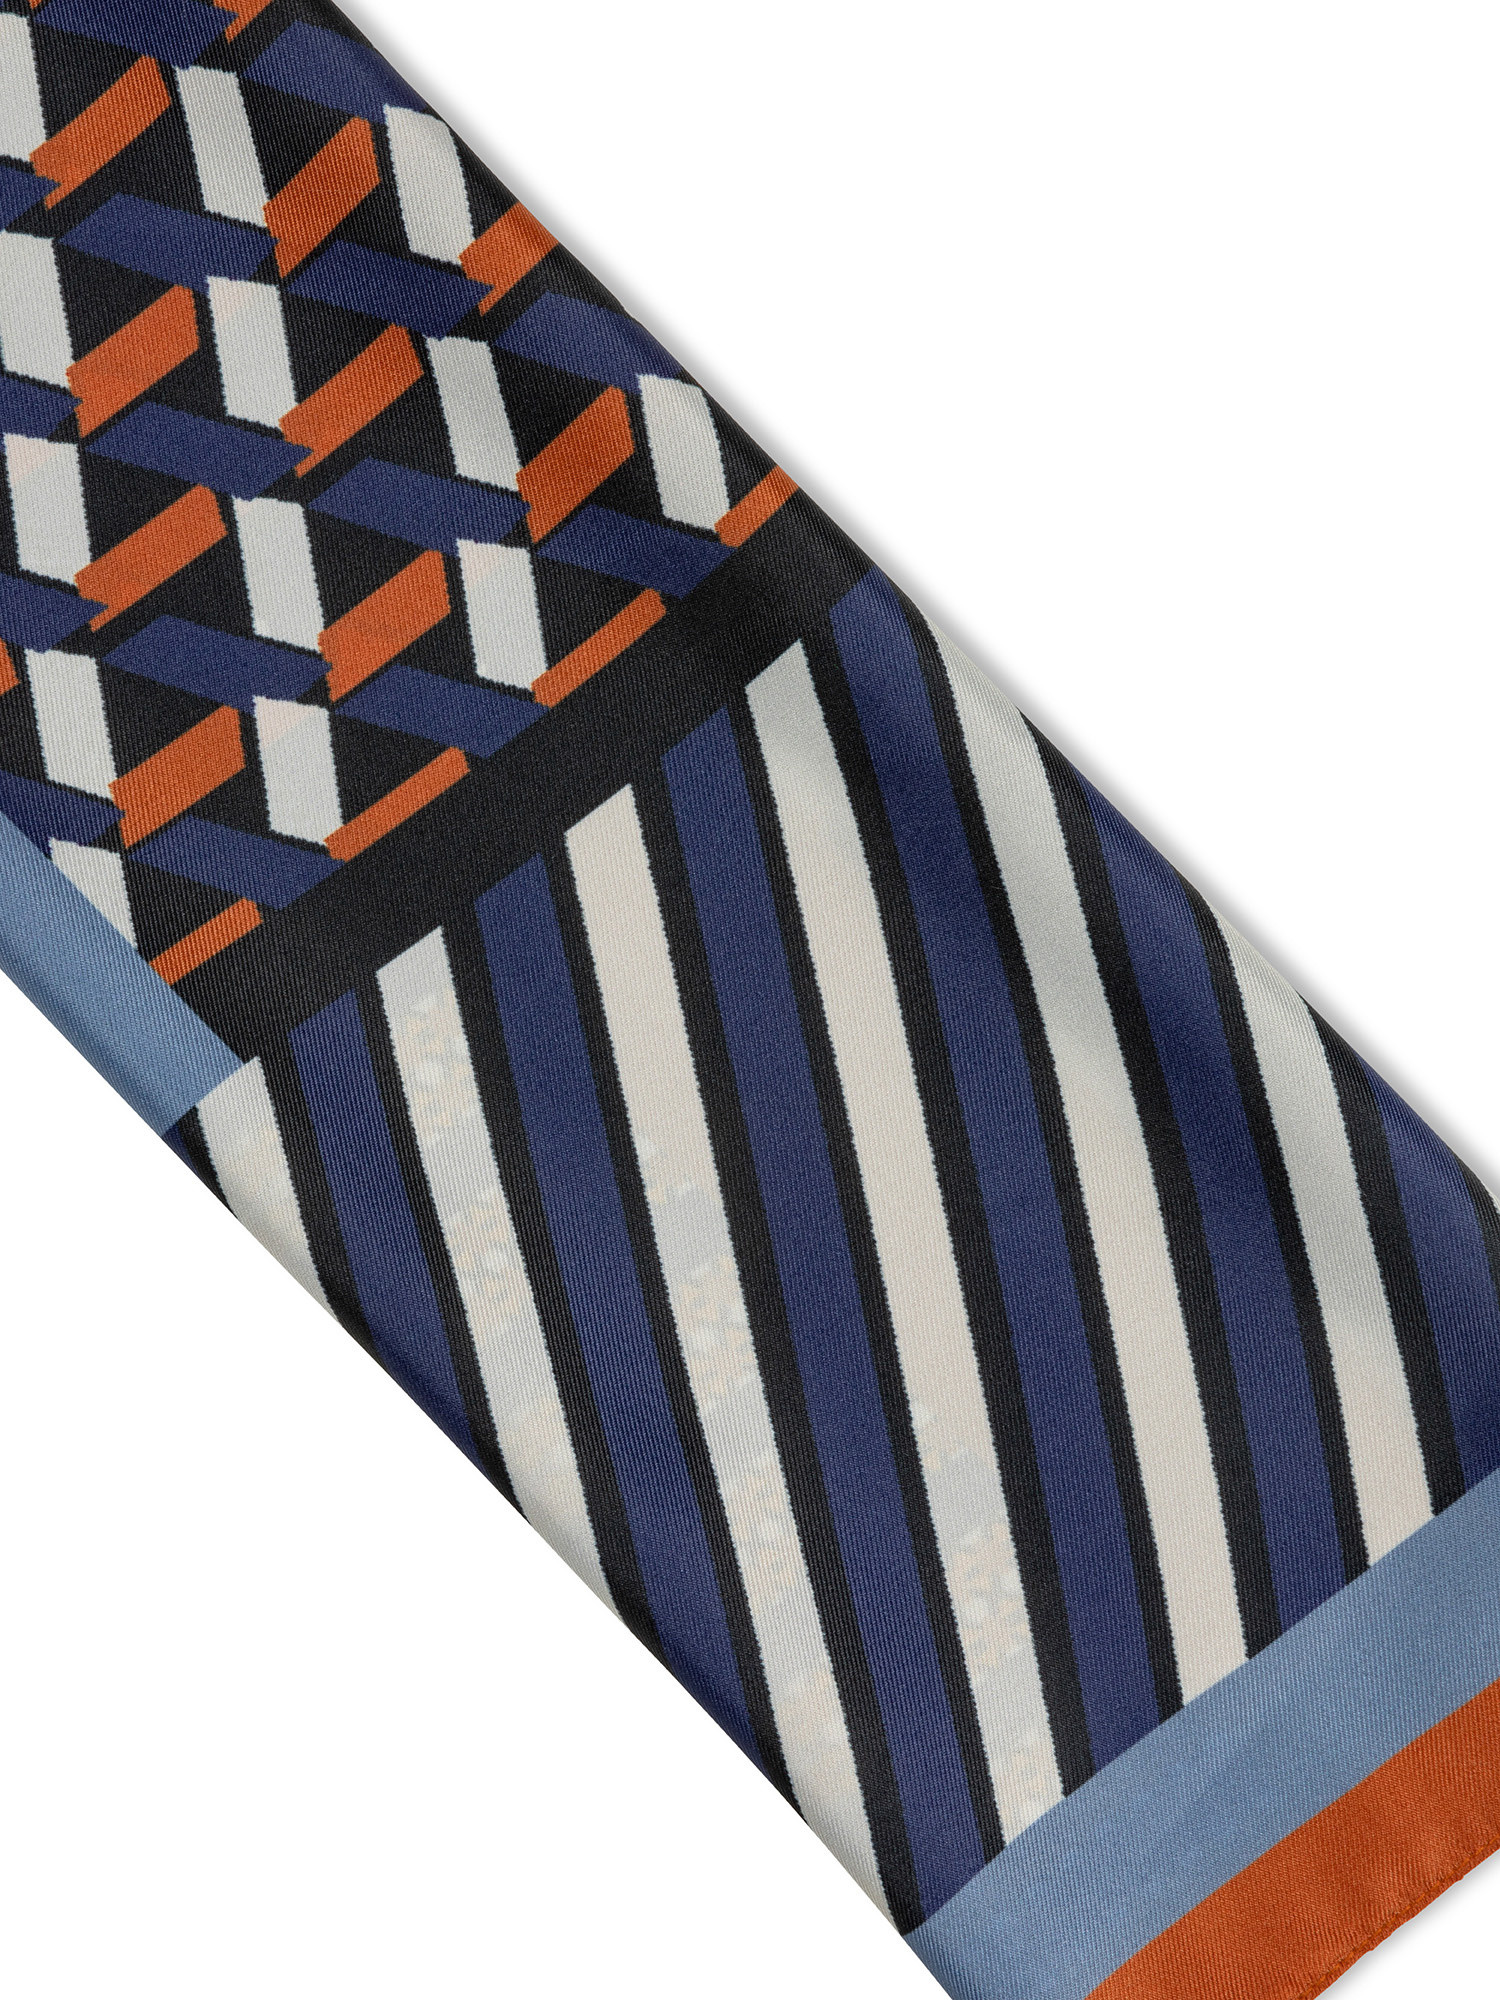 Koan - Patterned scarf, Blue, large image number 1